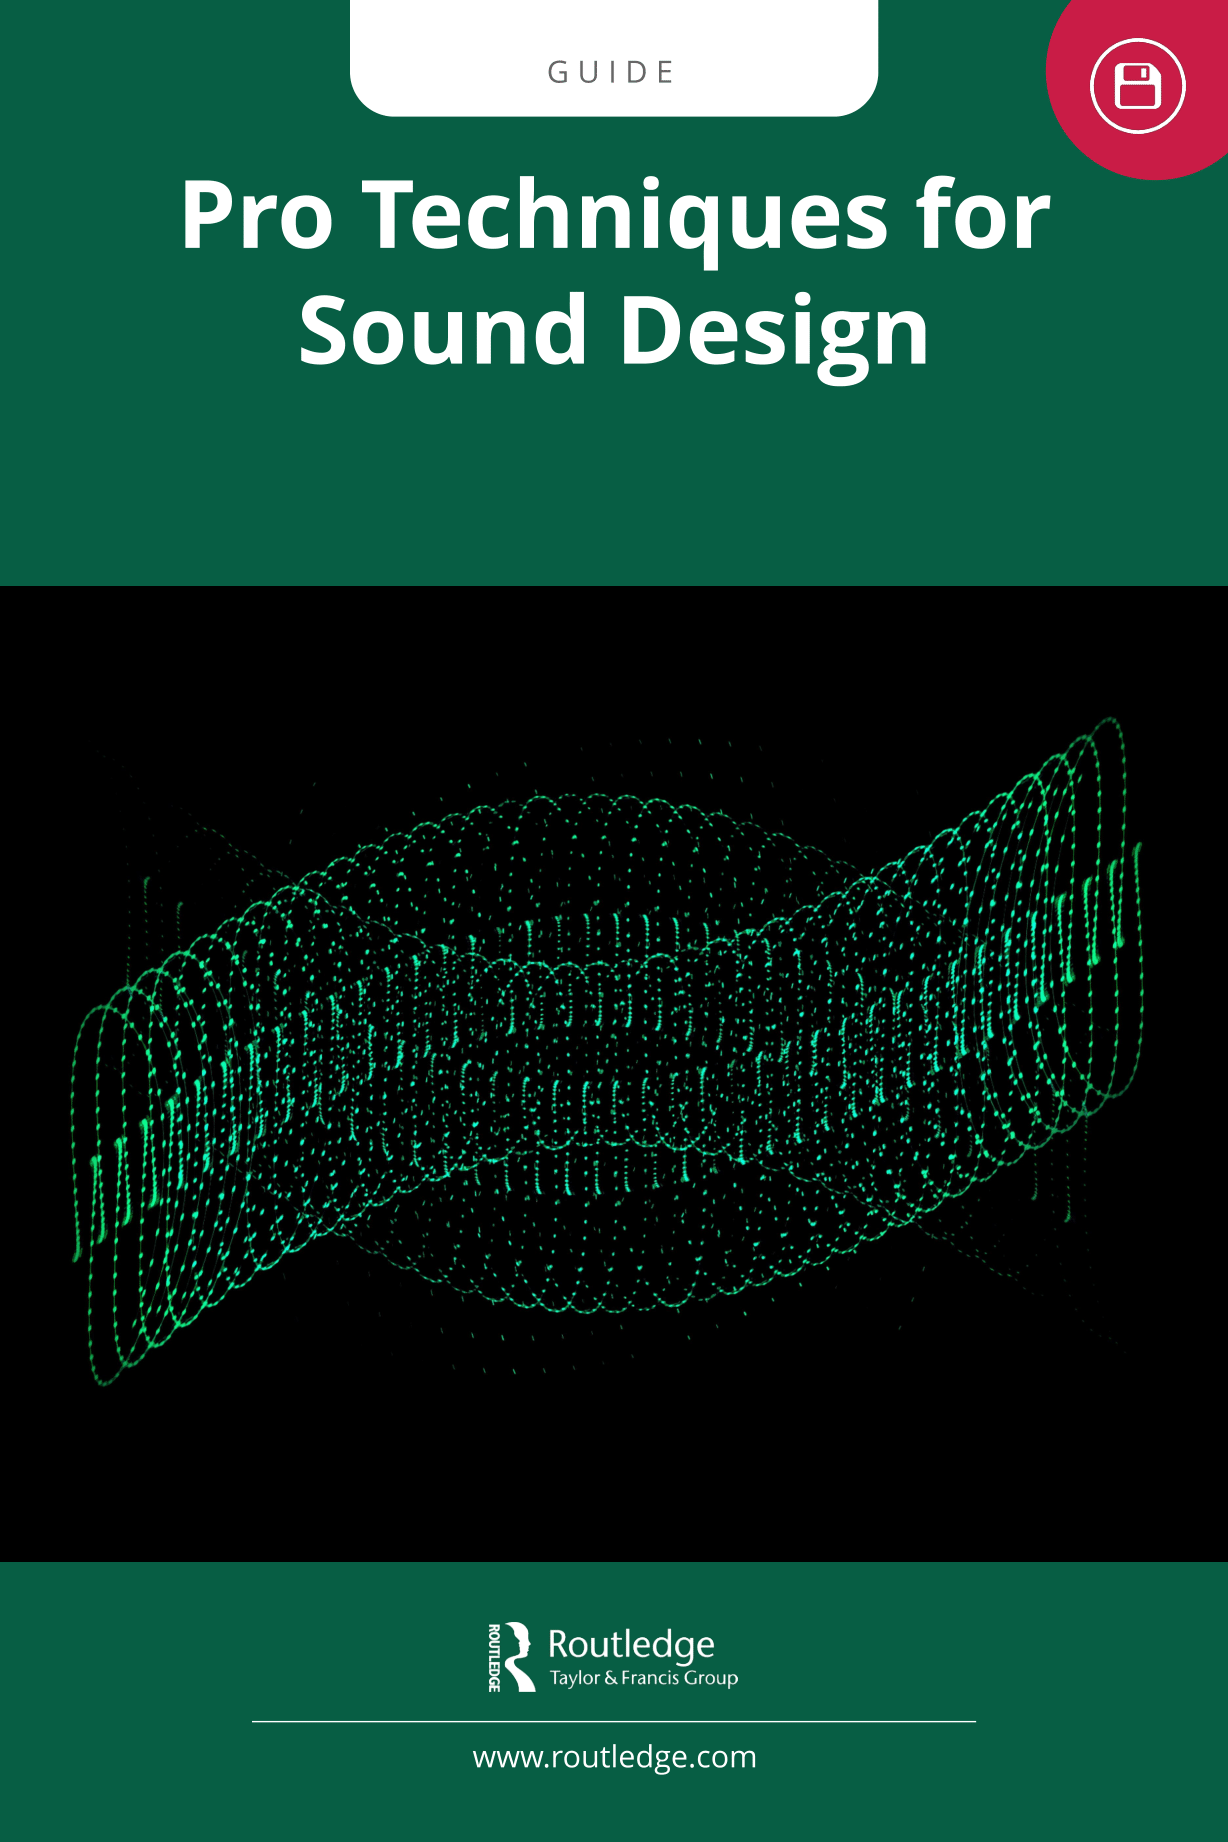 Sound design 101: How to make sounds